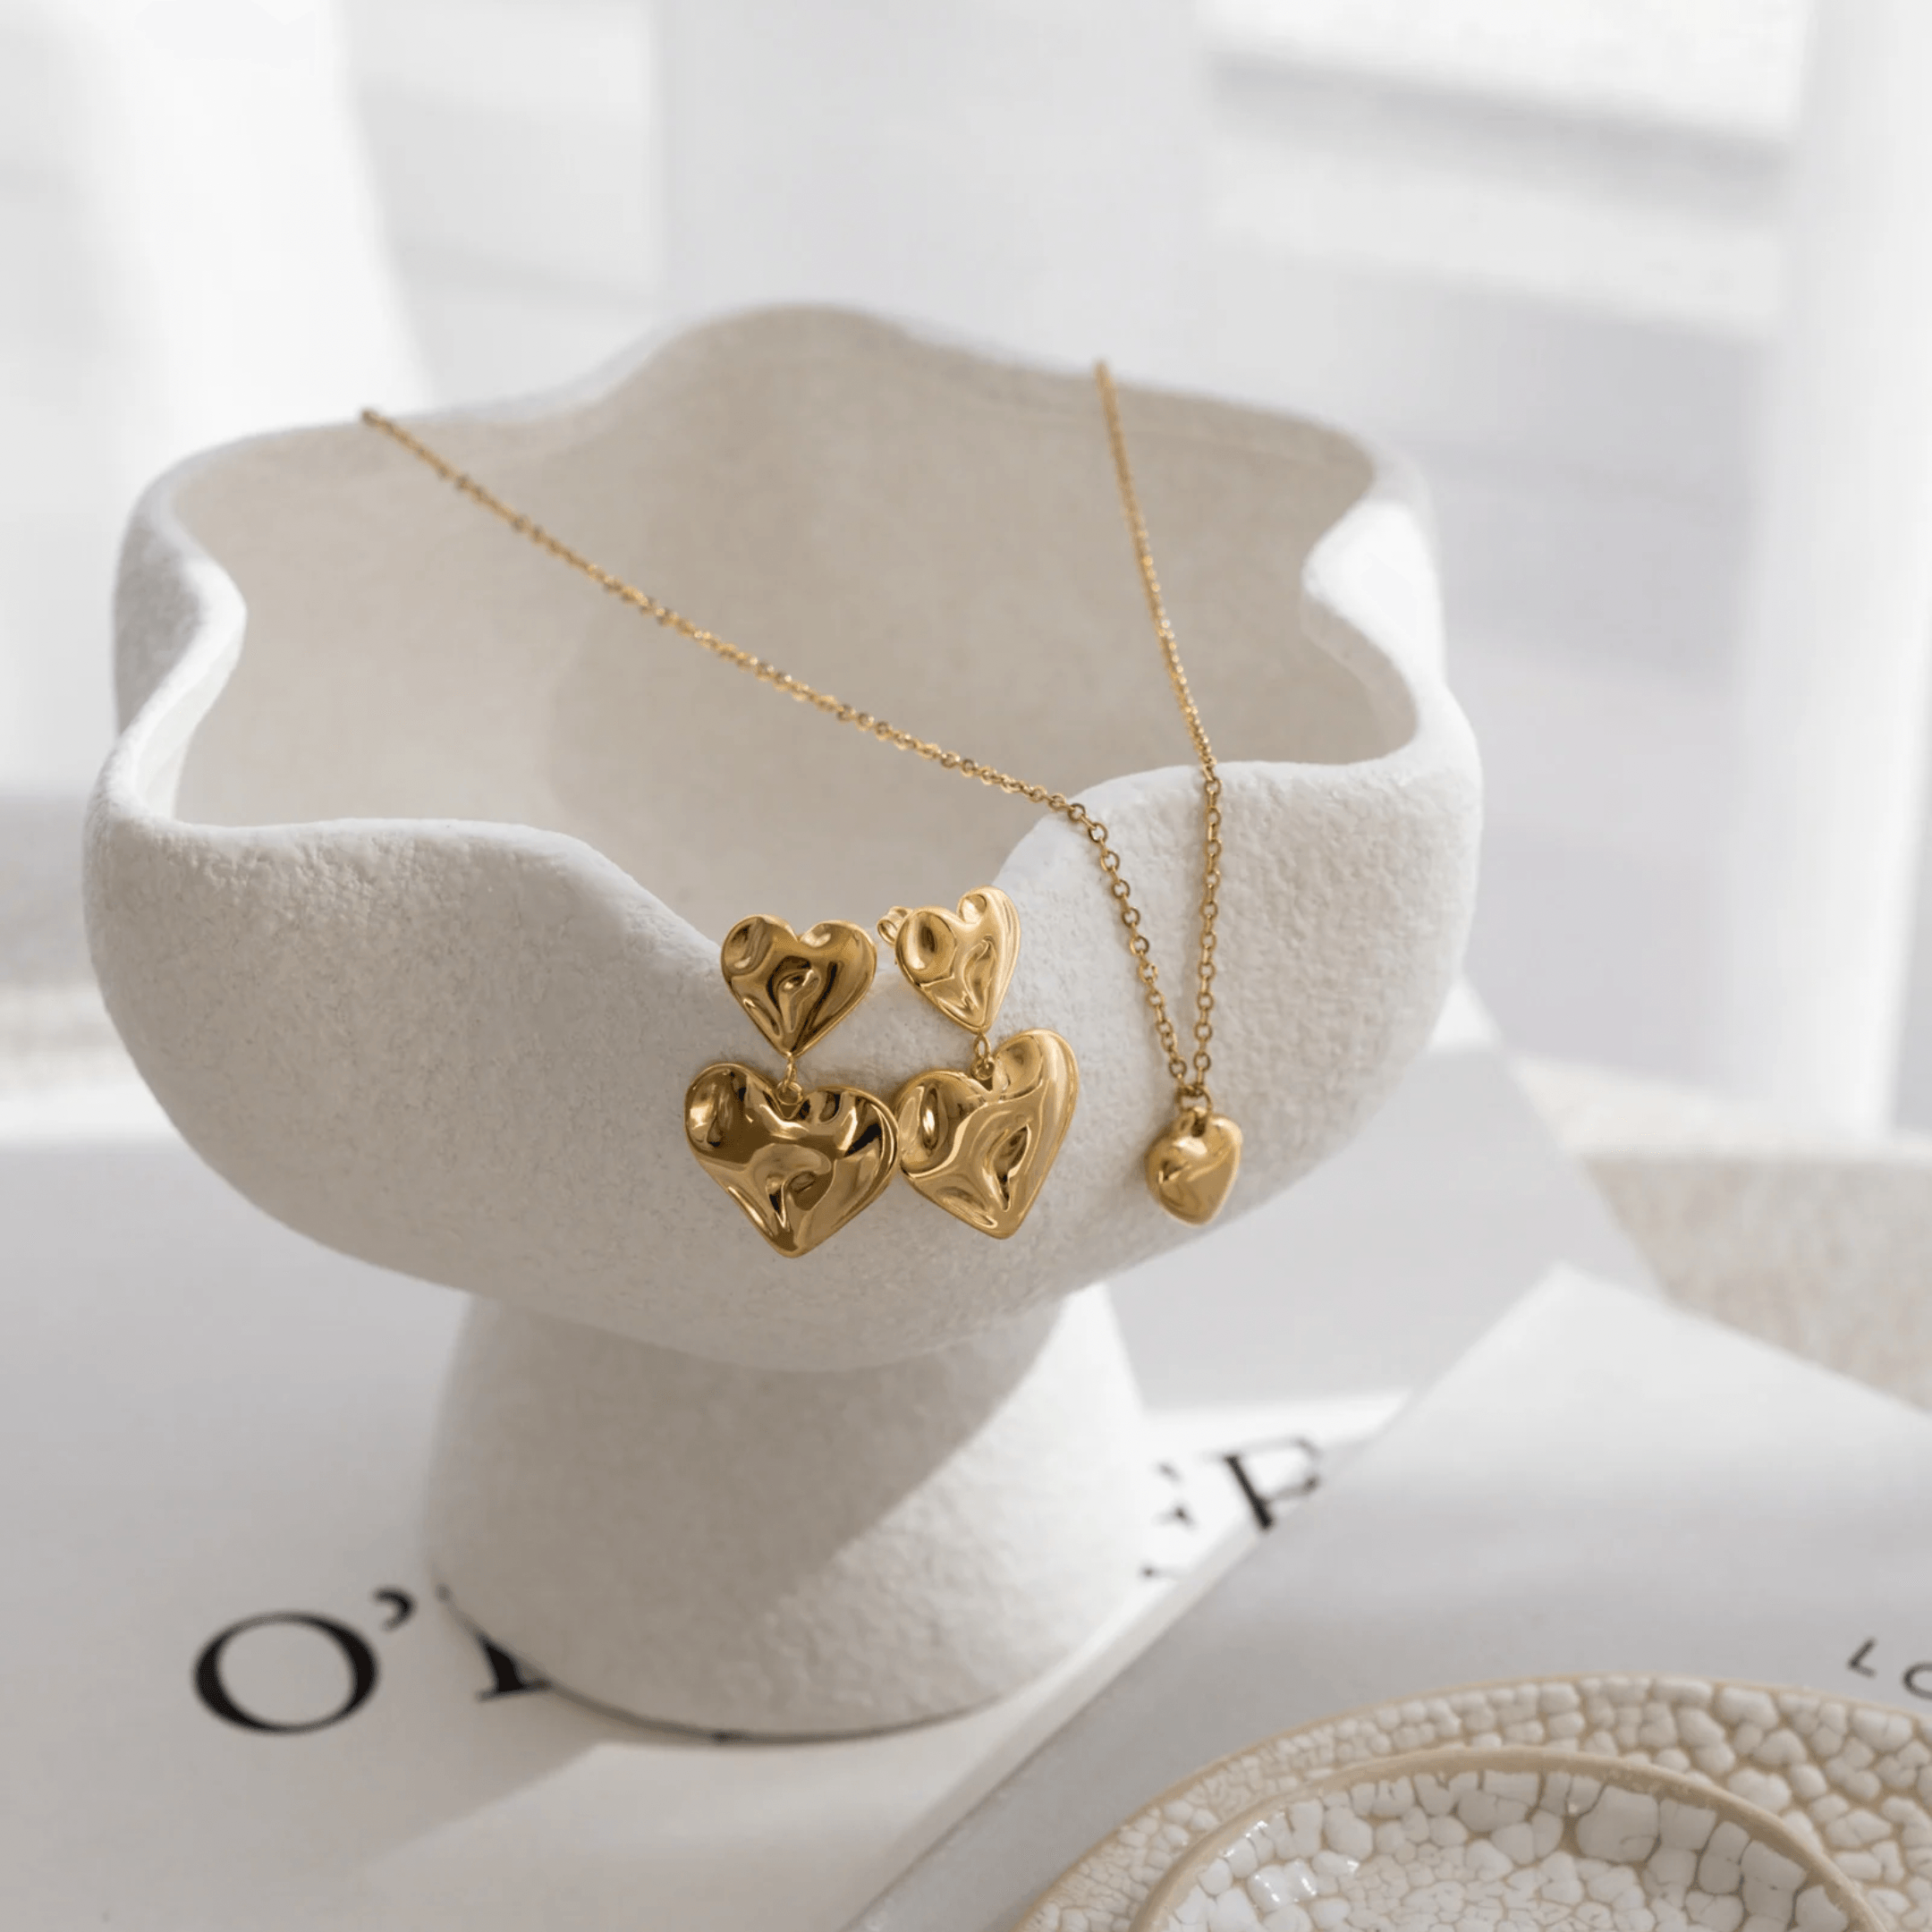 Asmara Heart Earrings - Gold - Drop Earrings, Gold, statement earrings - La Musa Jewellery